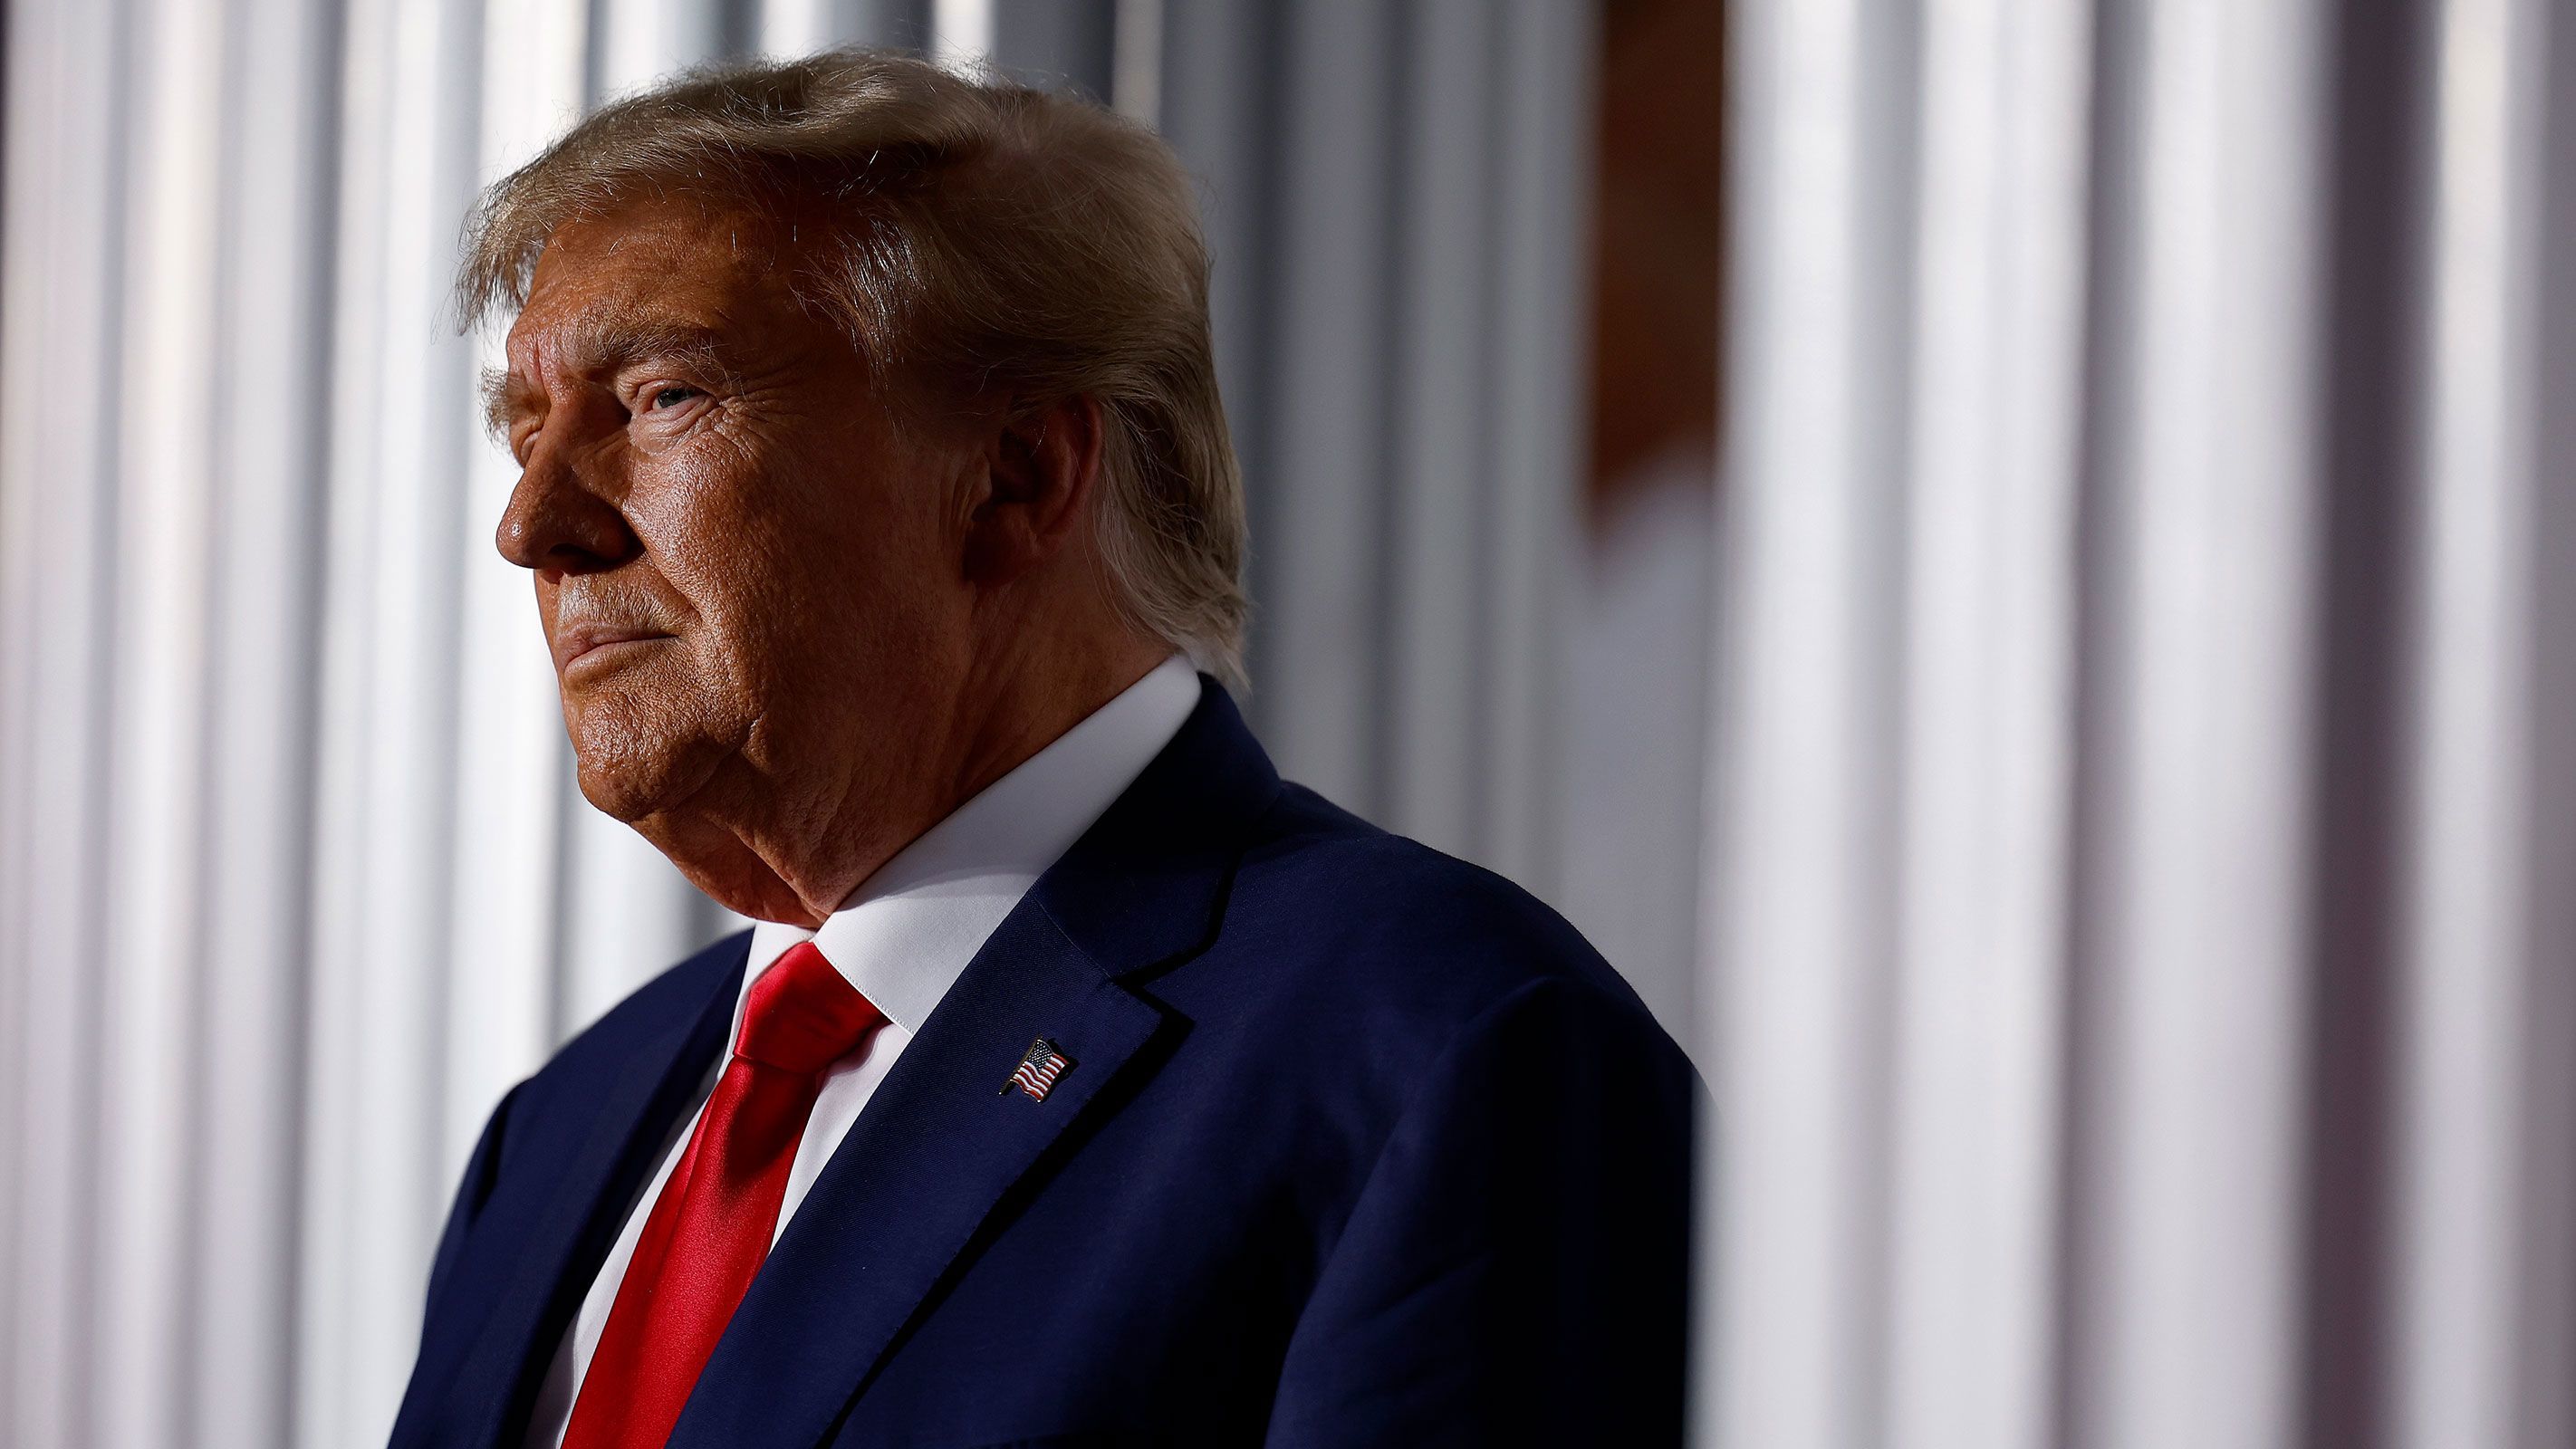 El expresidente Donald Trump se prepara para hablar en el Trump National Golf Club el 13 de junio en Bedminster, Nueva Jersey.